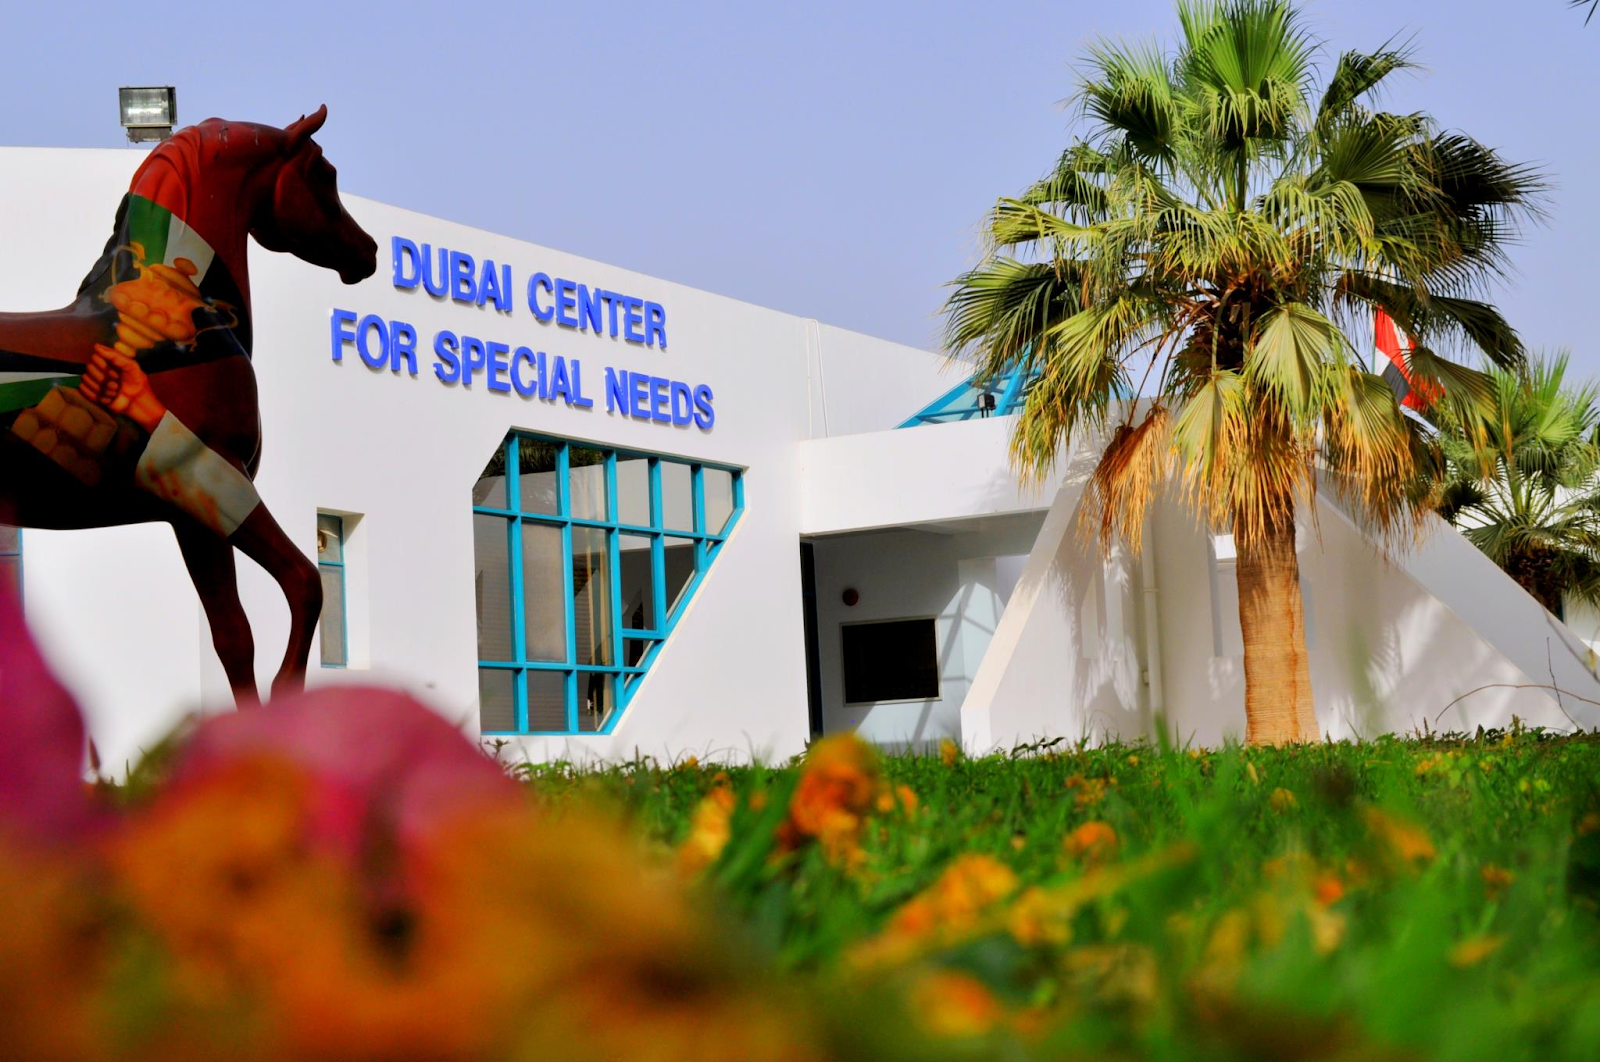 Dubai Centre for Special Needs, Sheikh Zayed Road, Dubai